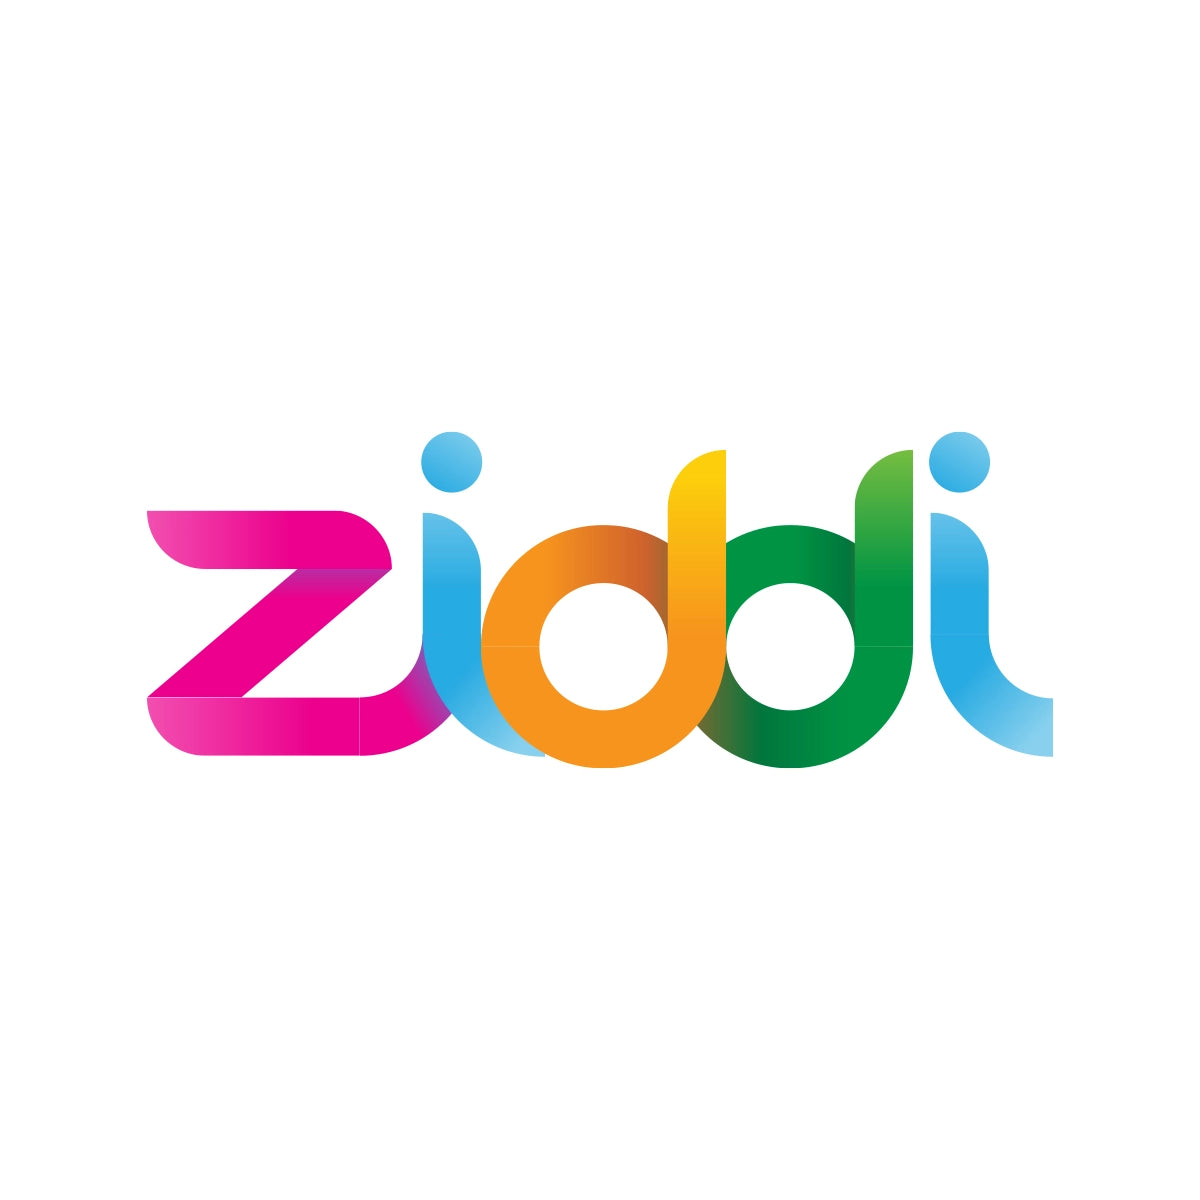 ziddi.com